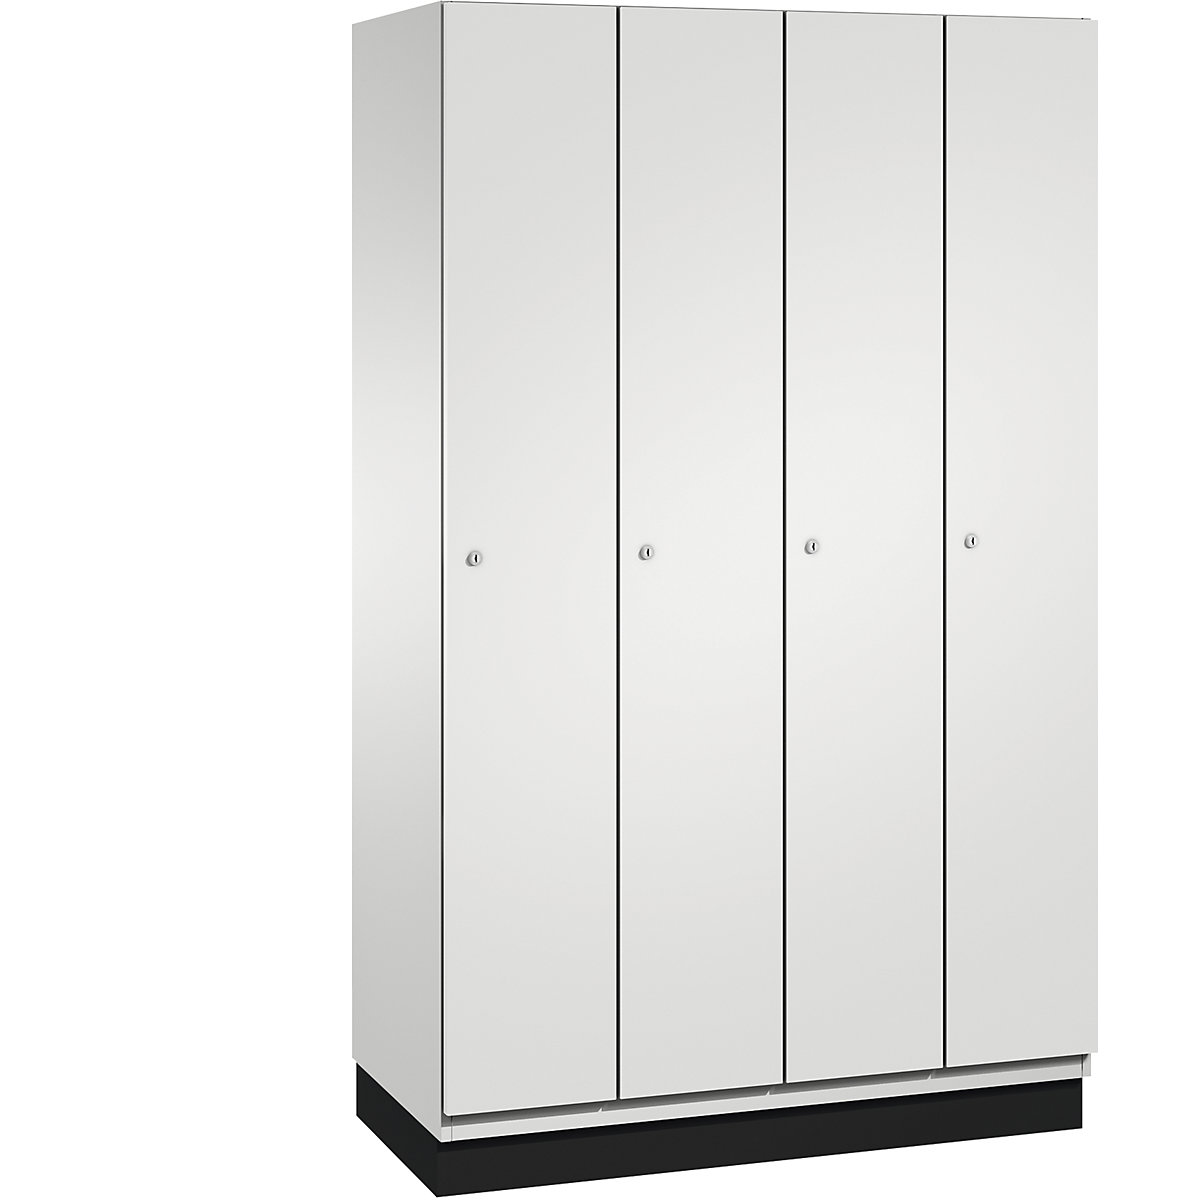 CAMBIO cloakroom locker with sheet steel doors – C+P, 4 compartments, 1200 mm wide, body light grey / door light grey-3